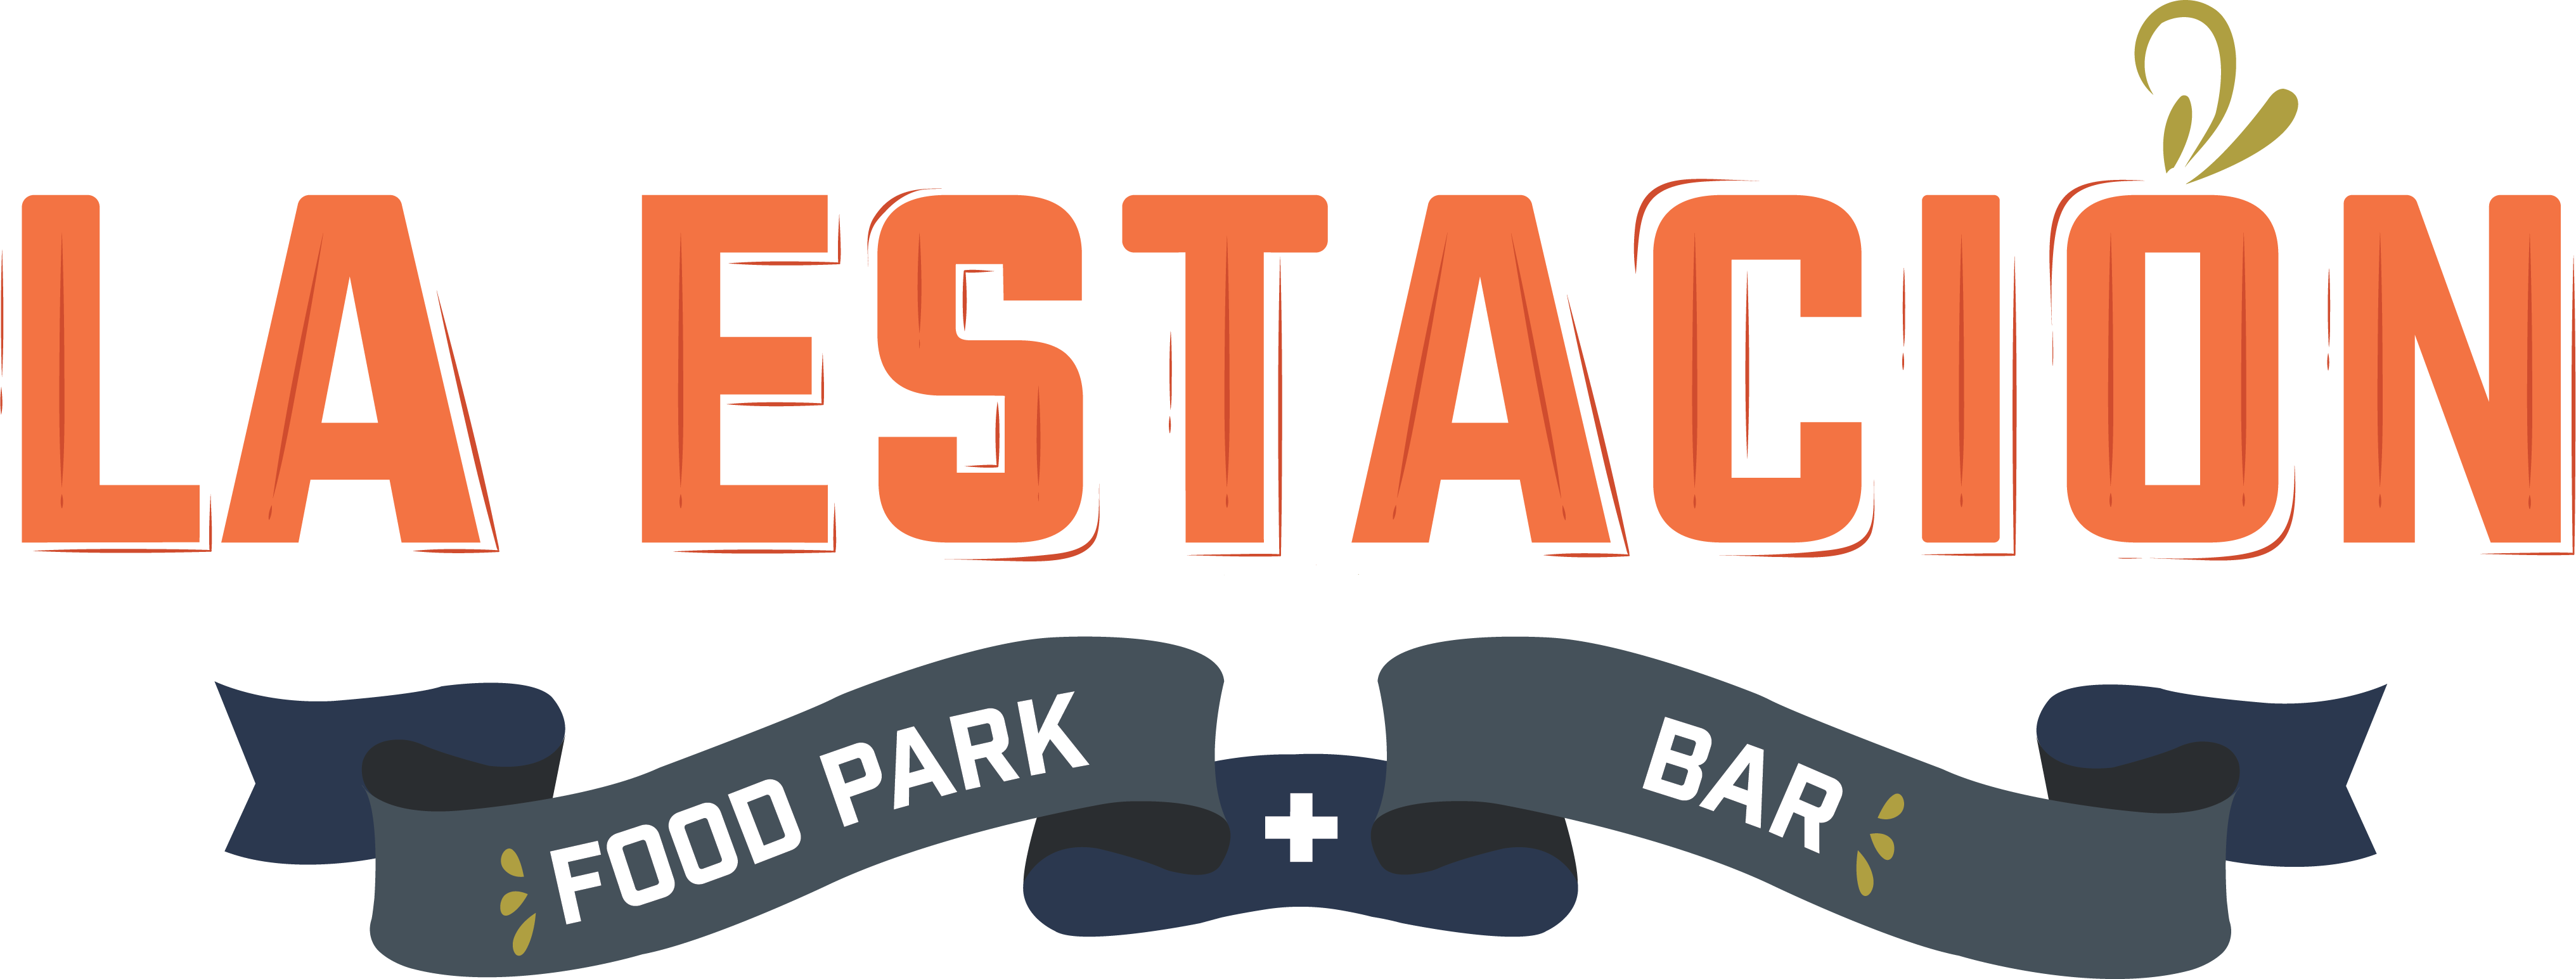 LaEstacion-Logo